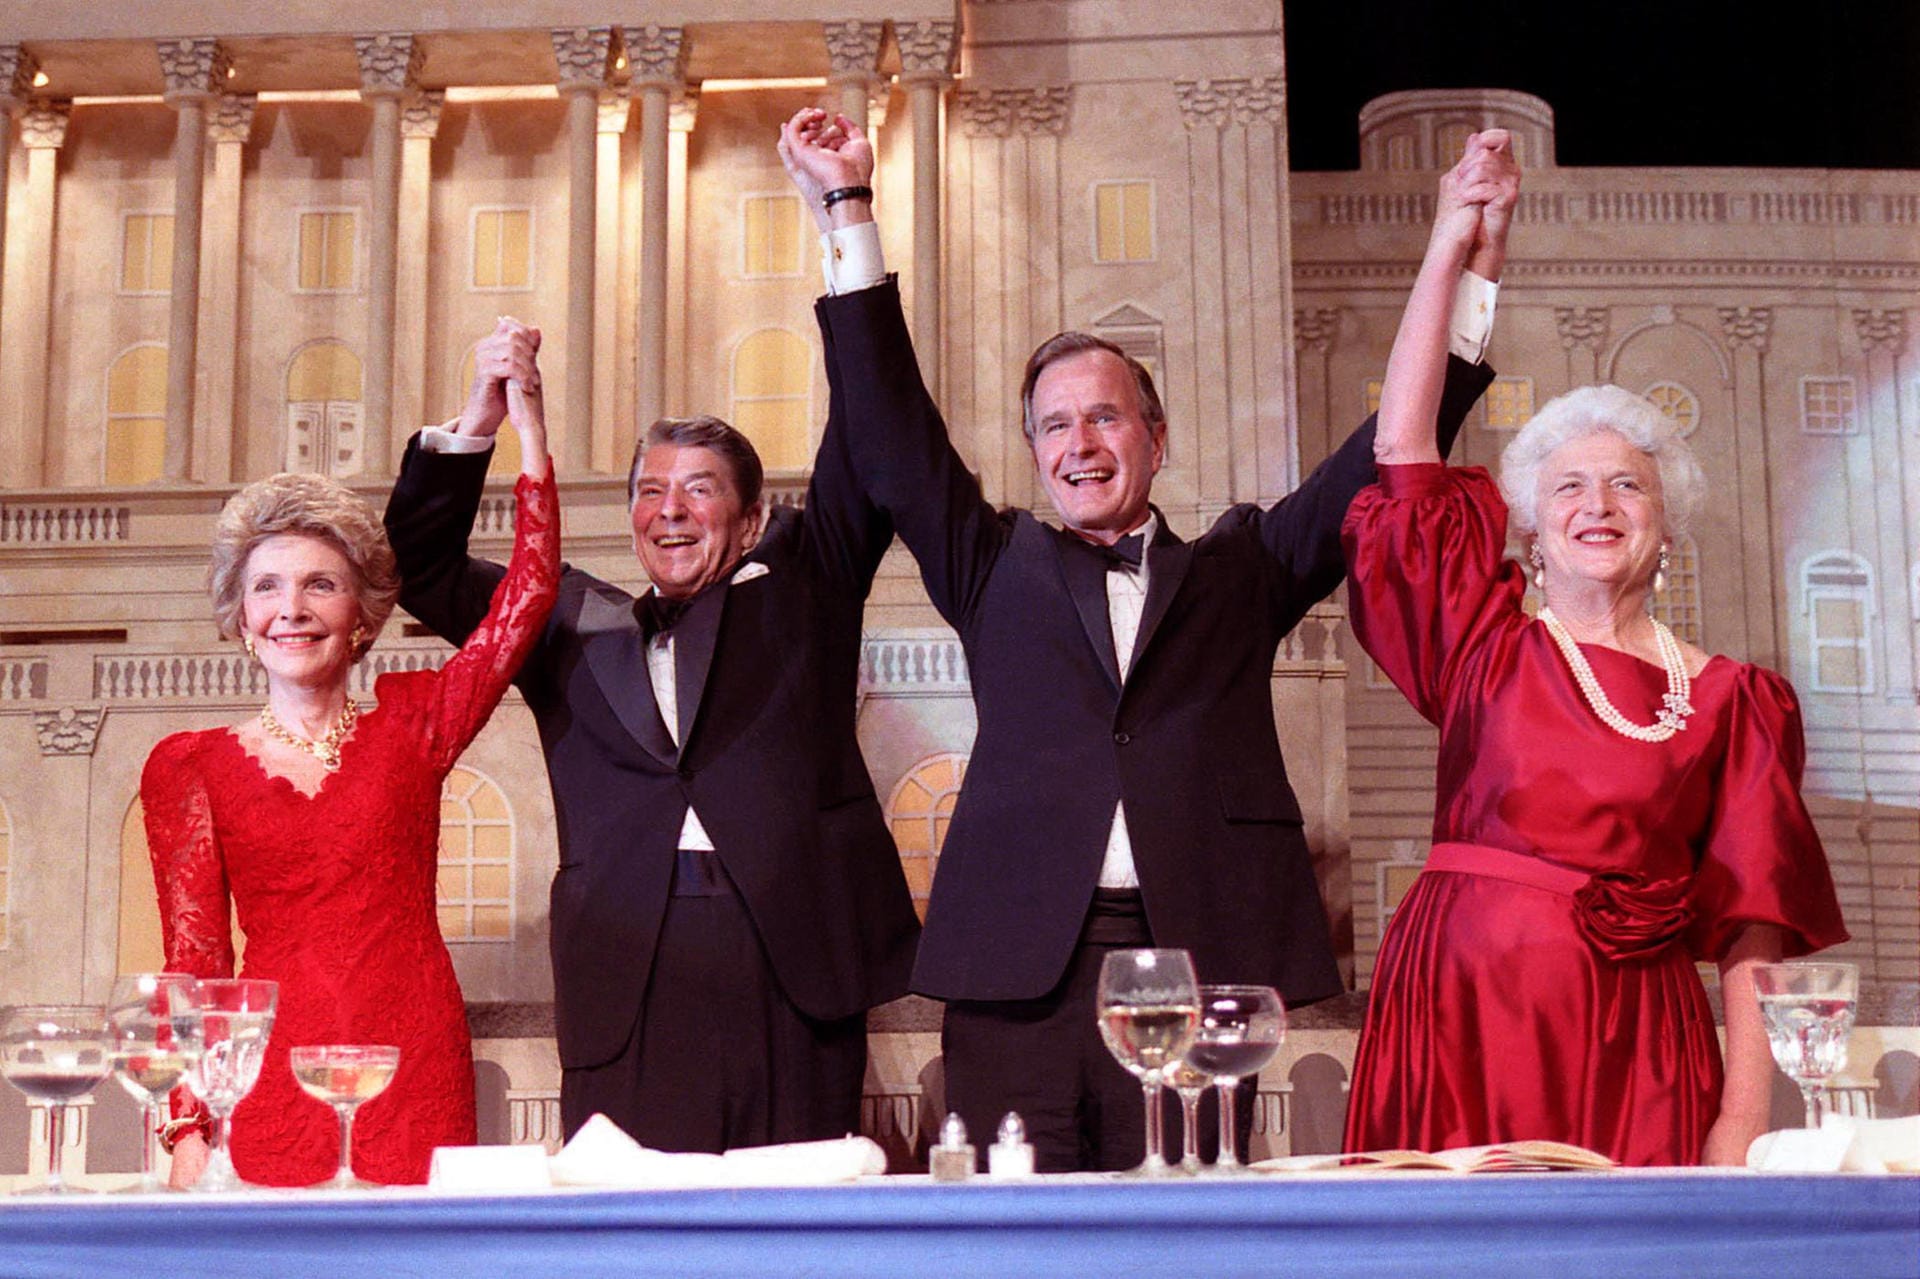 Die Krönung: Nach acht Jahren als Vizepräsident will Bush Ronald Reagan als Präsident nachfolgen. Auf diesem feierlichen Abendessen im Mai 1988 versichert der beliebte Reagan seinem Vize offiziell die Unterstützung – ein wichtiges Signal, das mit den Ehefrauen Nancy Reagan und Barbara Bush inszeniert wird.